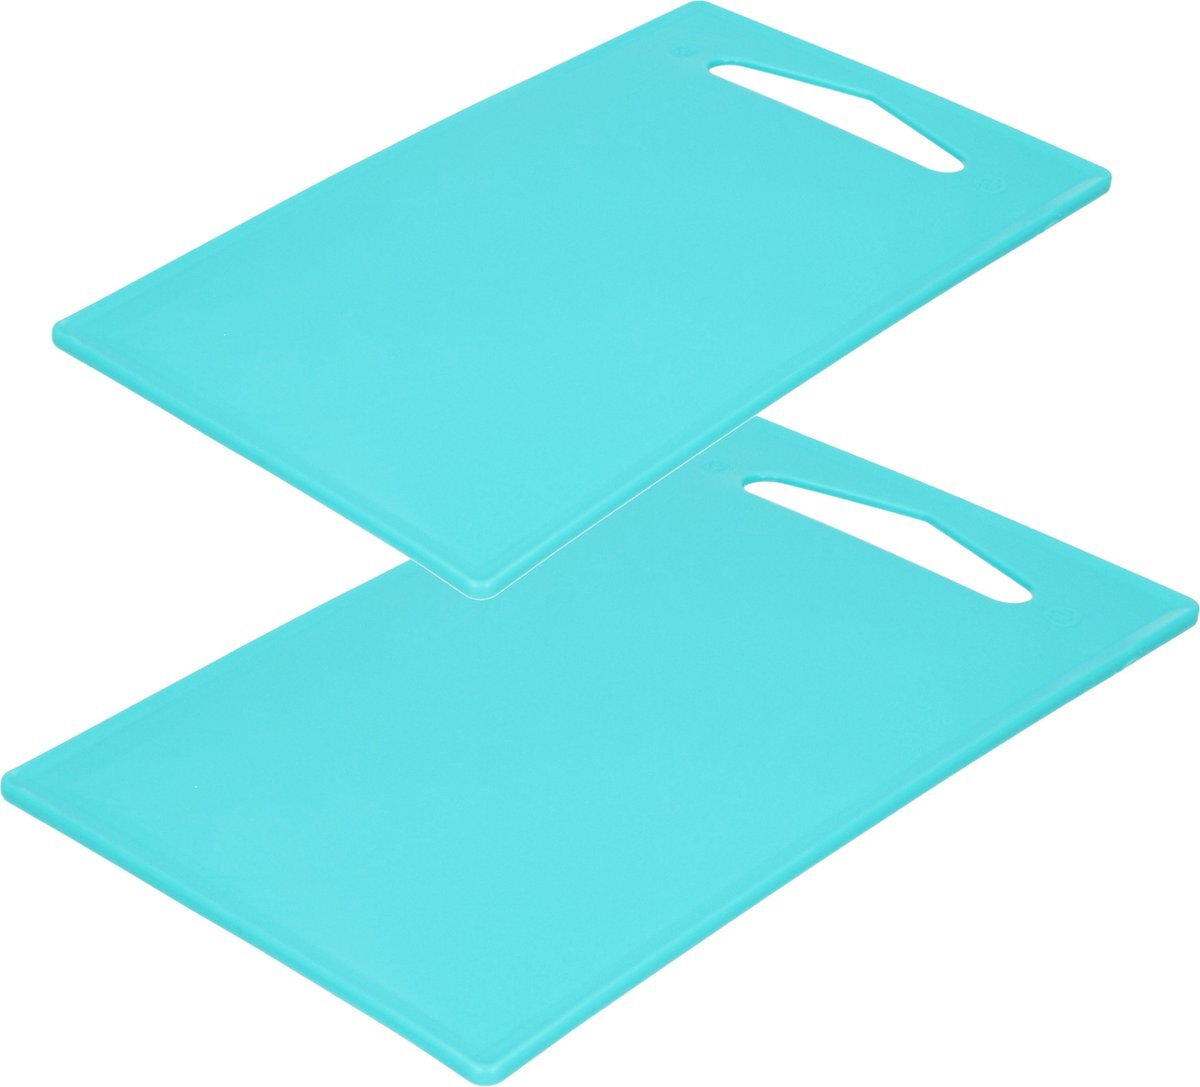 Forte Plastics Kunststof snijplanken set van 2x stuks blauw 27 x 16 en 36 x 24 cm - Keuken/koken accessoires